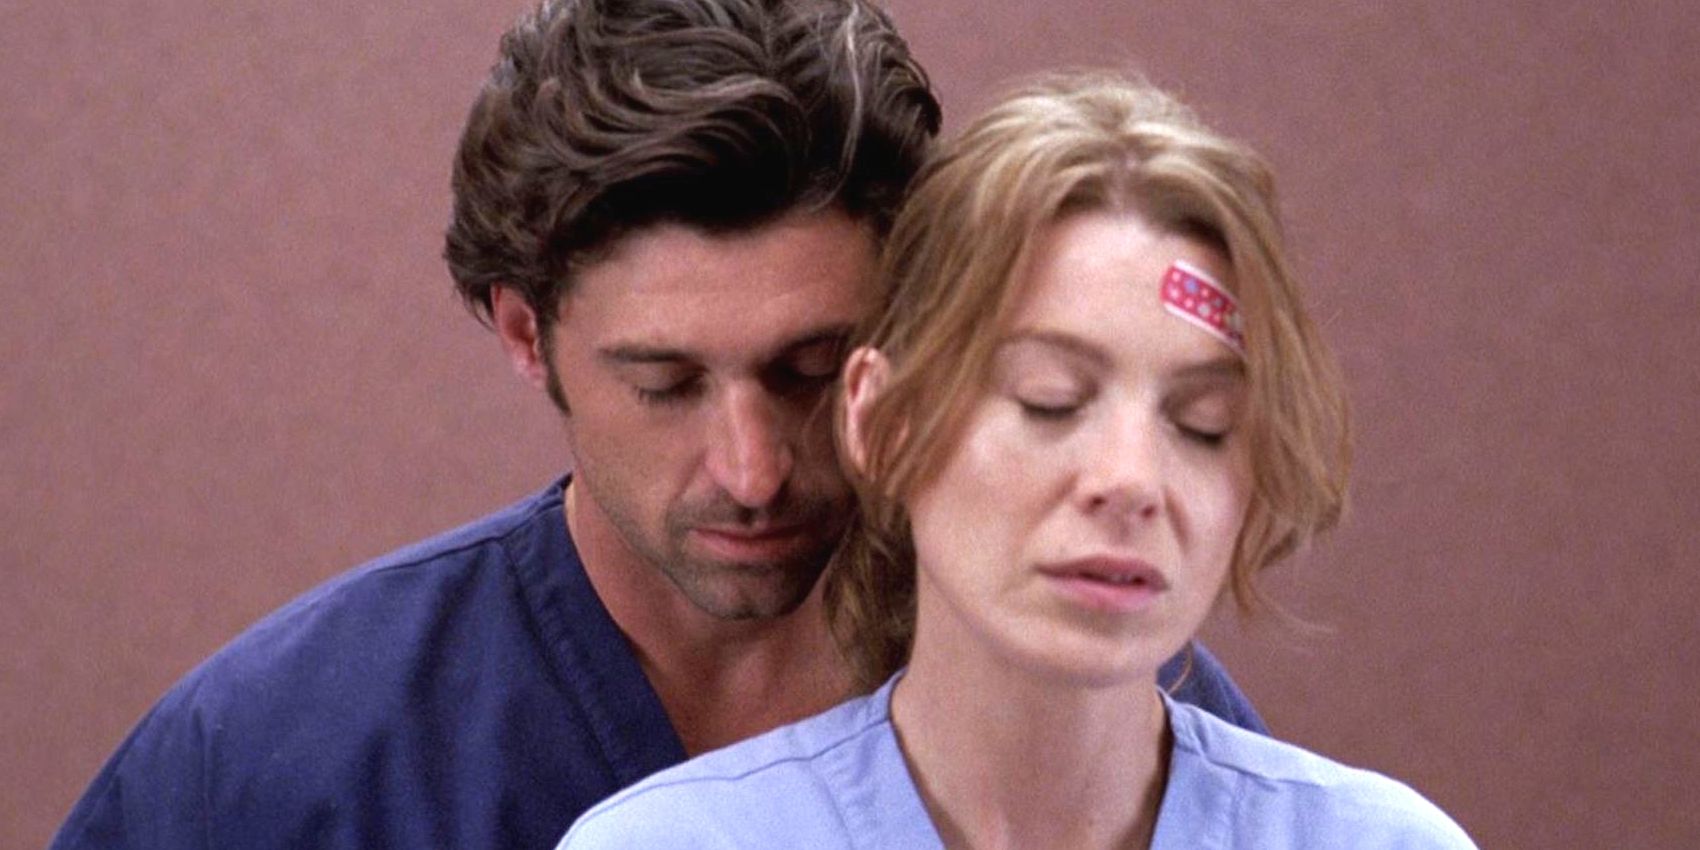 Derek embracing Meredith from behind